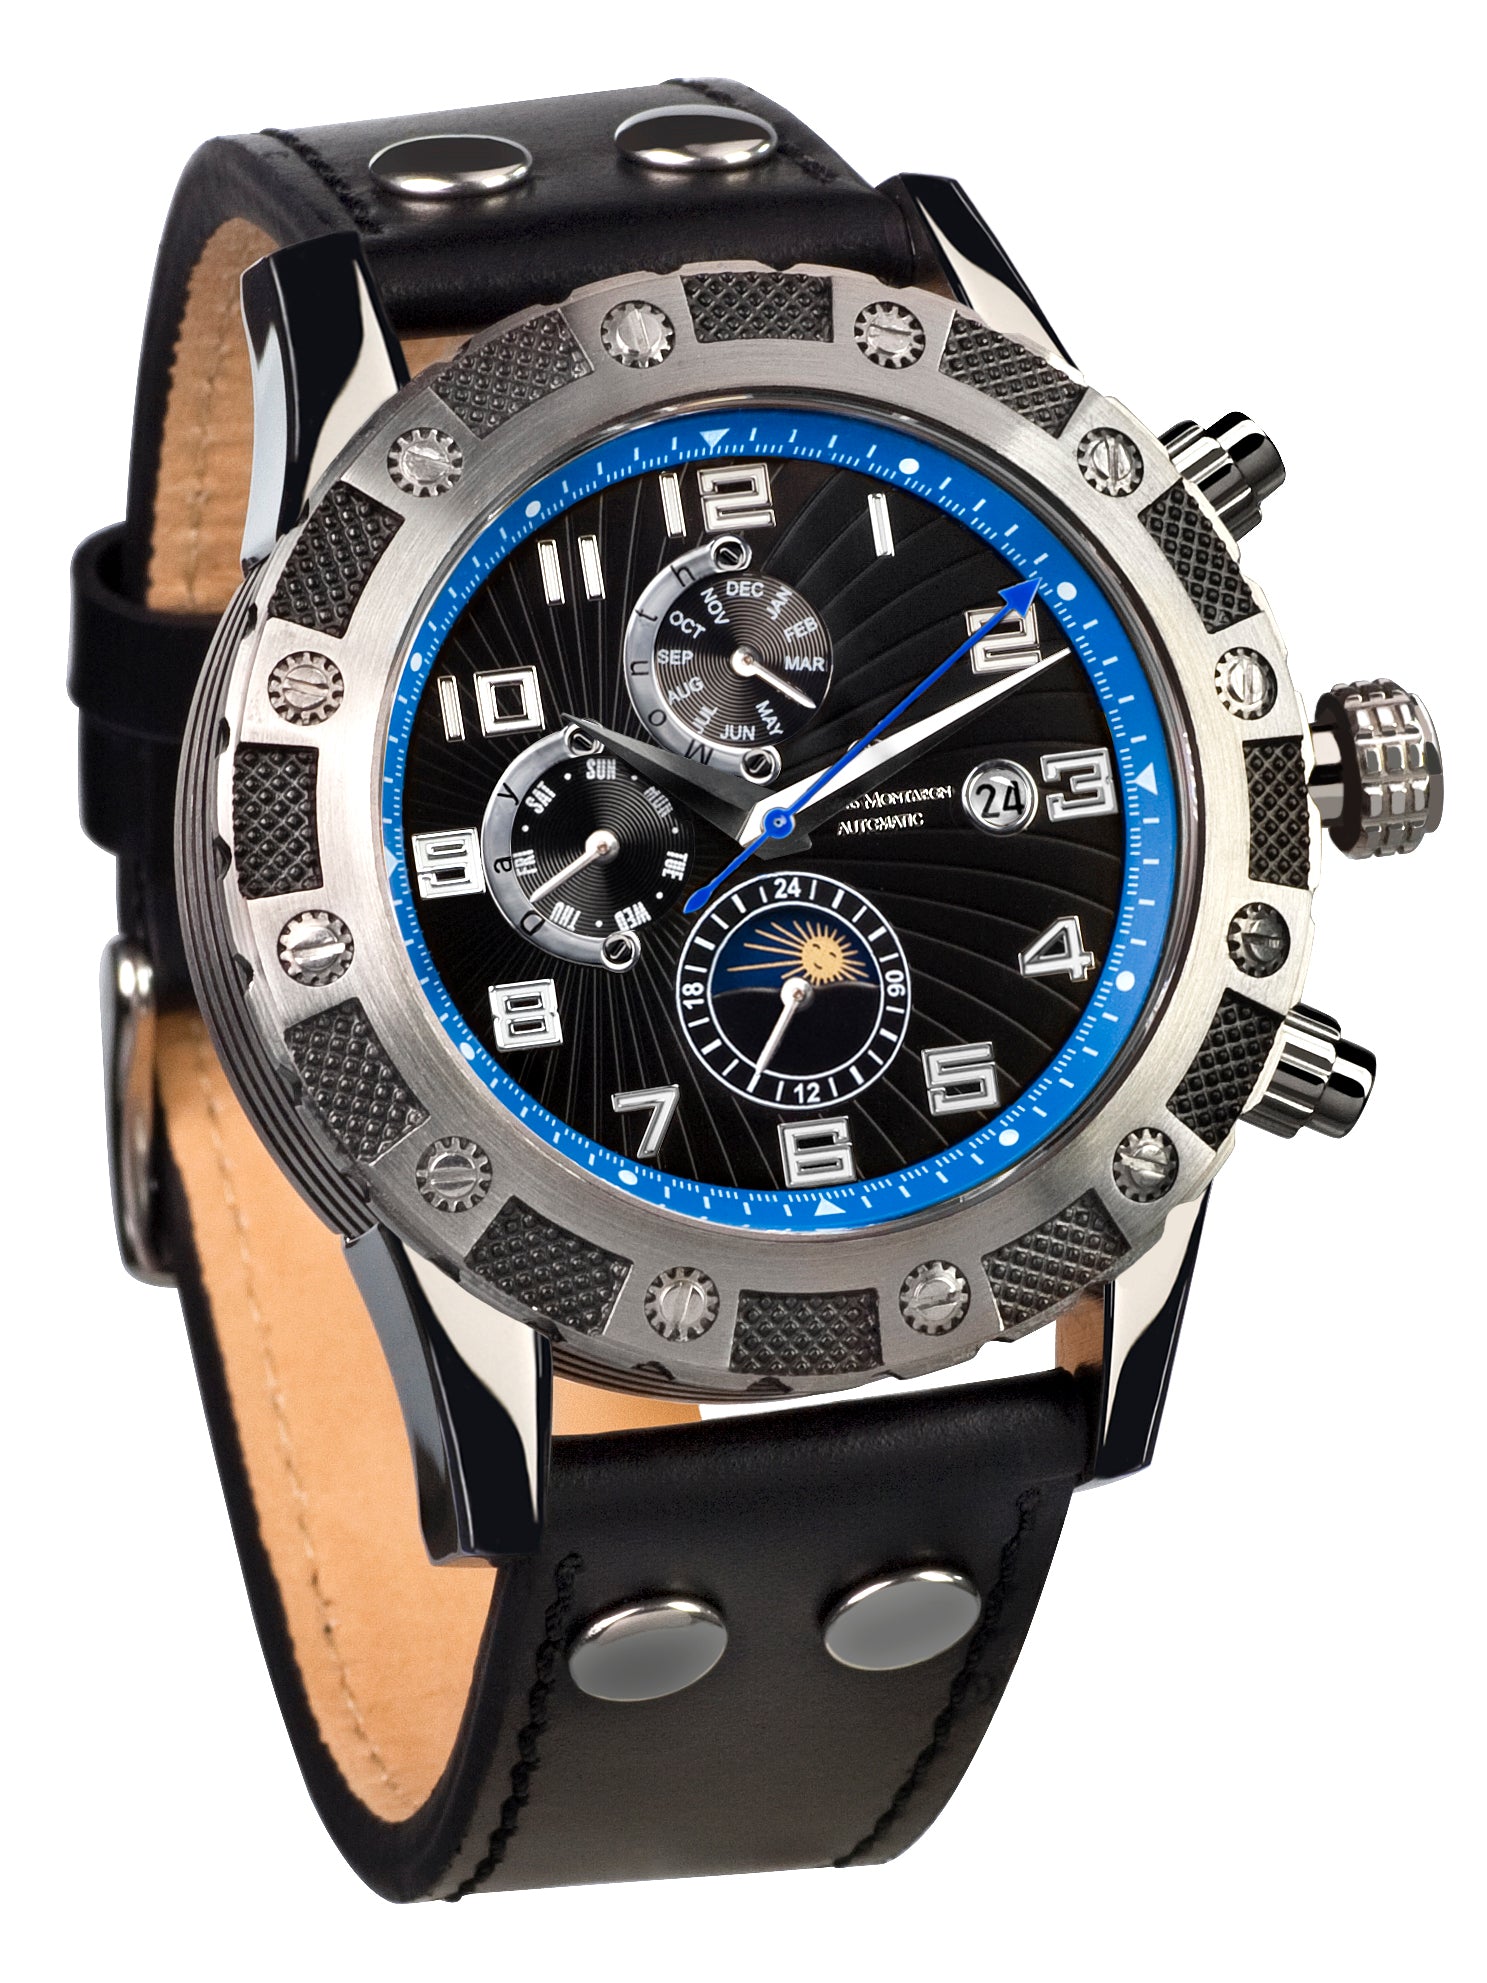 Automatic watches — Le Général — Mathis Montabon — blau